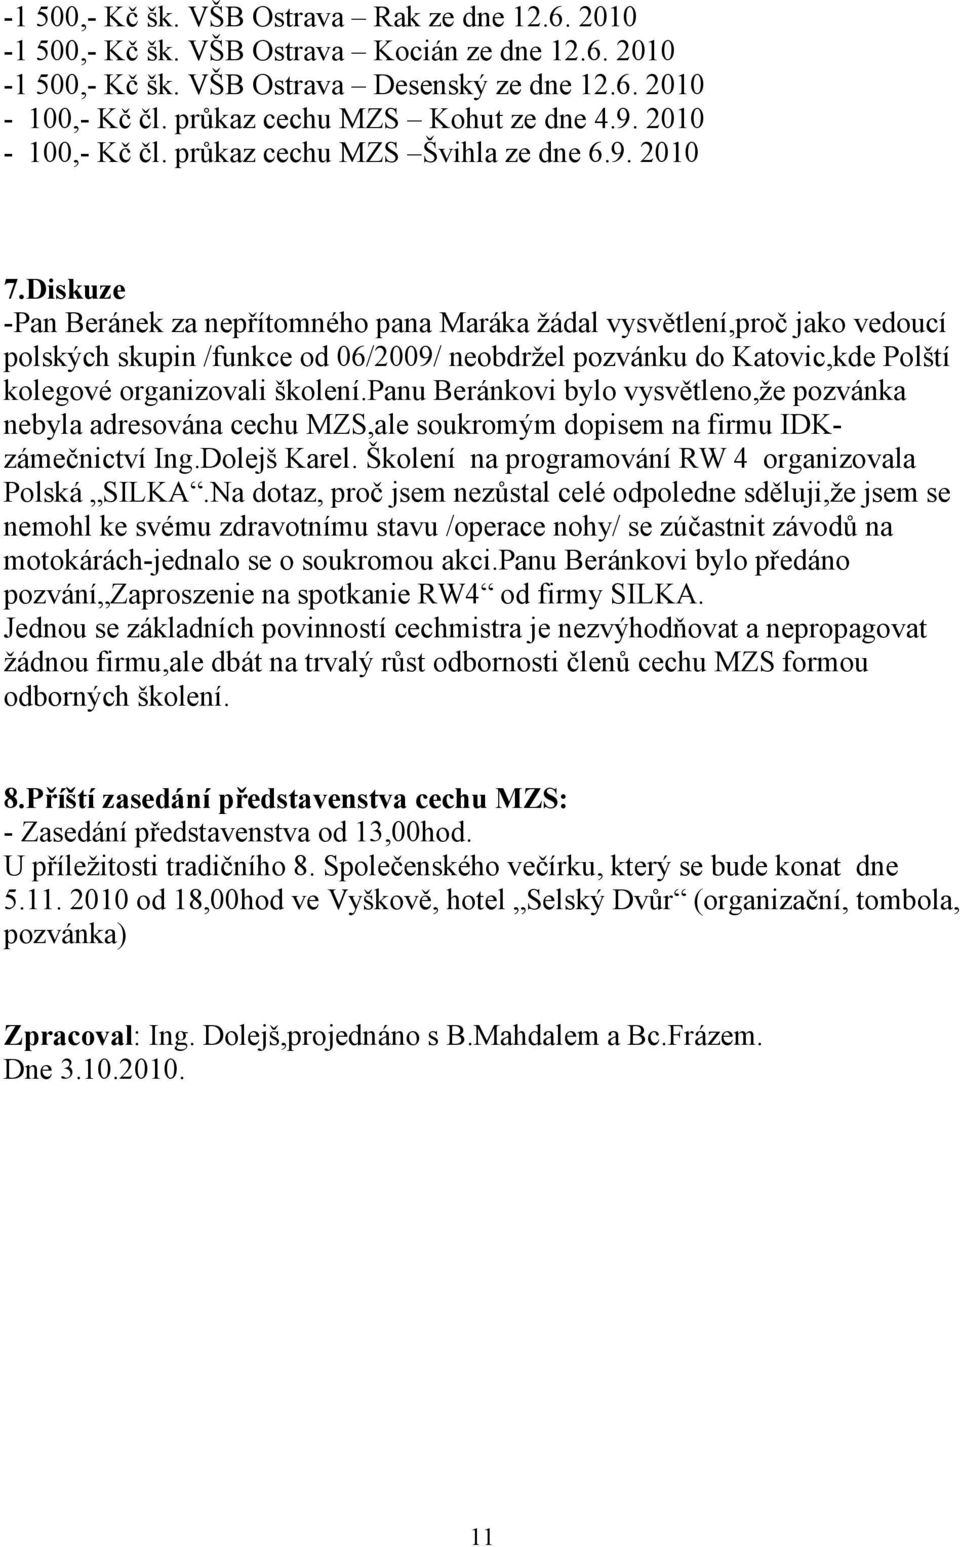 Diskuze -Pan Beránek za nepřítomného pana Maráka žádal vysvětlení,proč jako vedoucí polských skupin /funkce od 06/2009/ neobdržel pozvánku do Katovic,kde Polští kolegové organizovali školení.